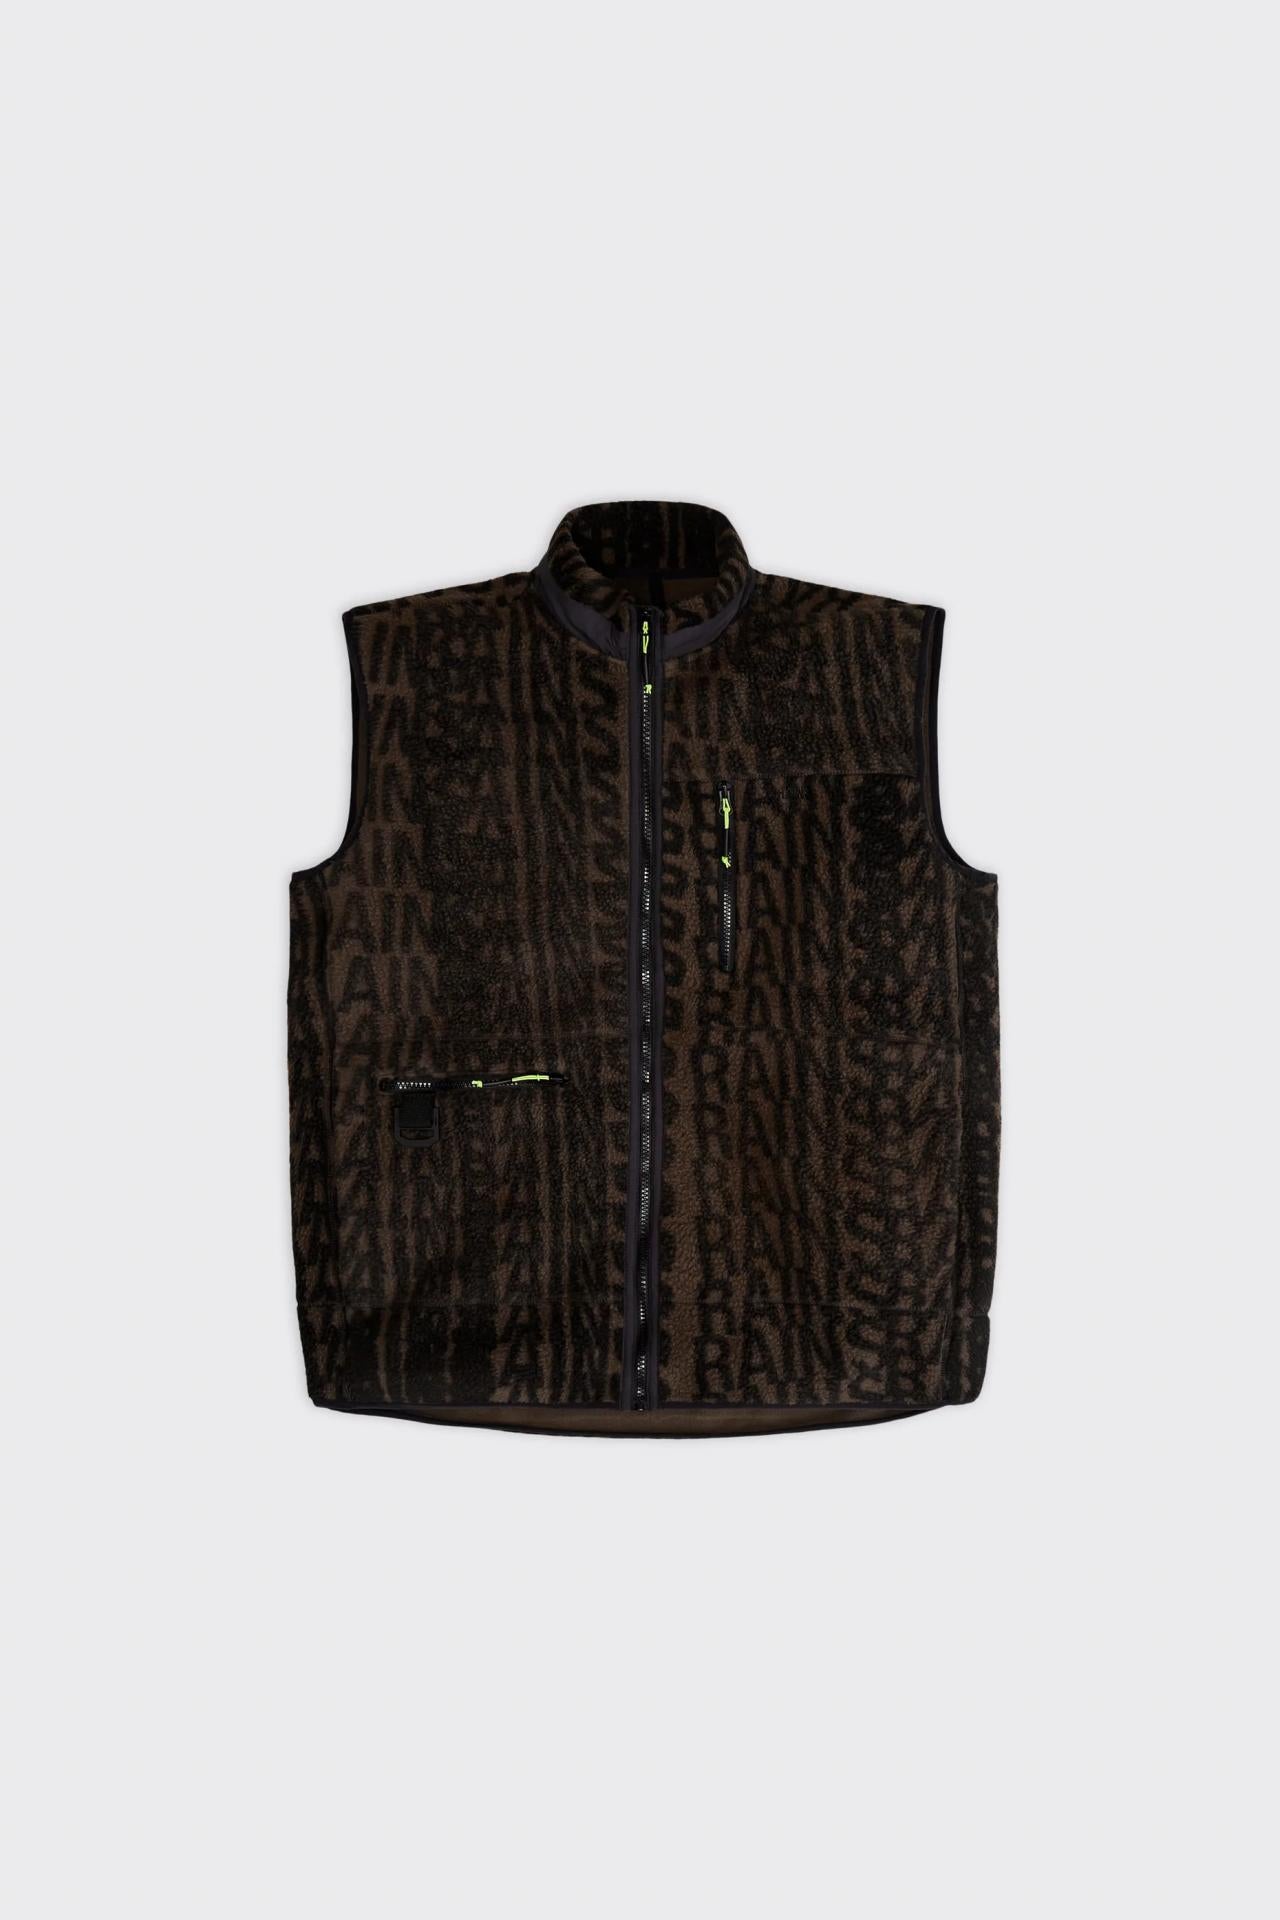 Rains Heavy Fleece Vest Wood-Black Monogram S